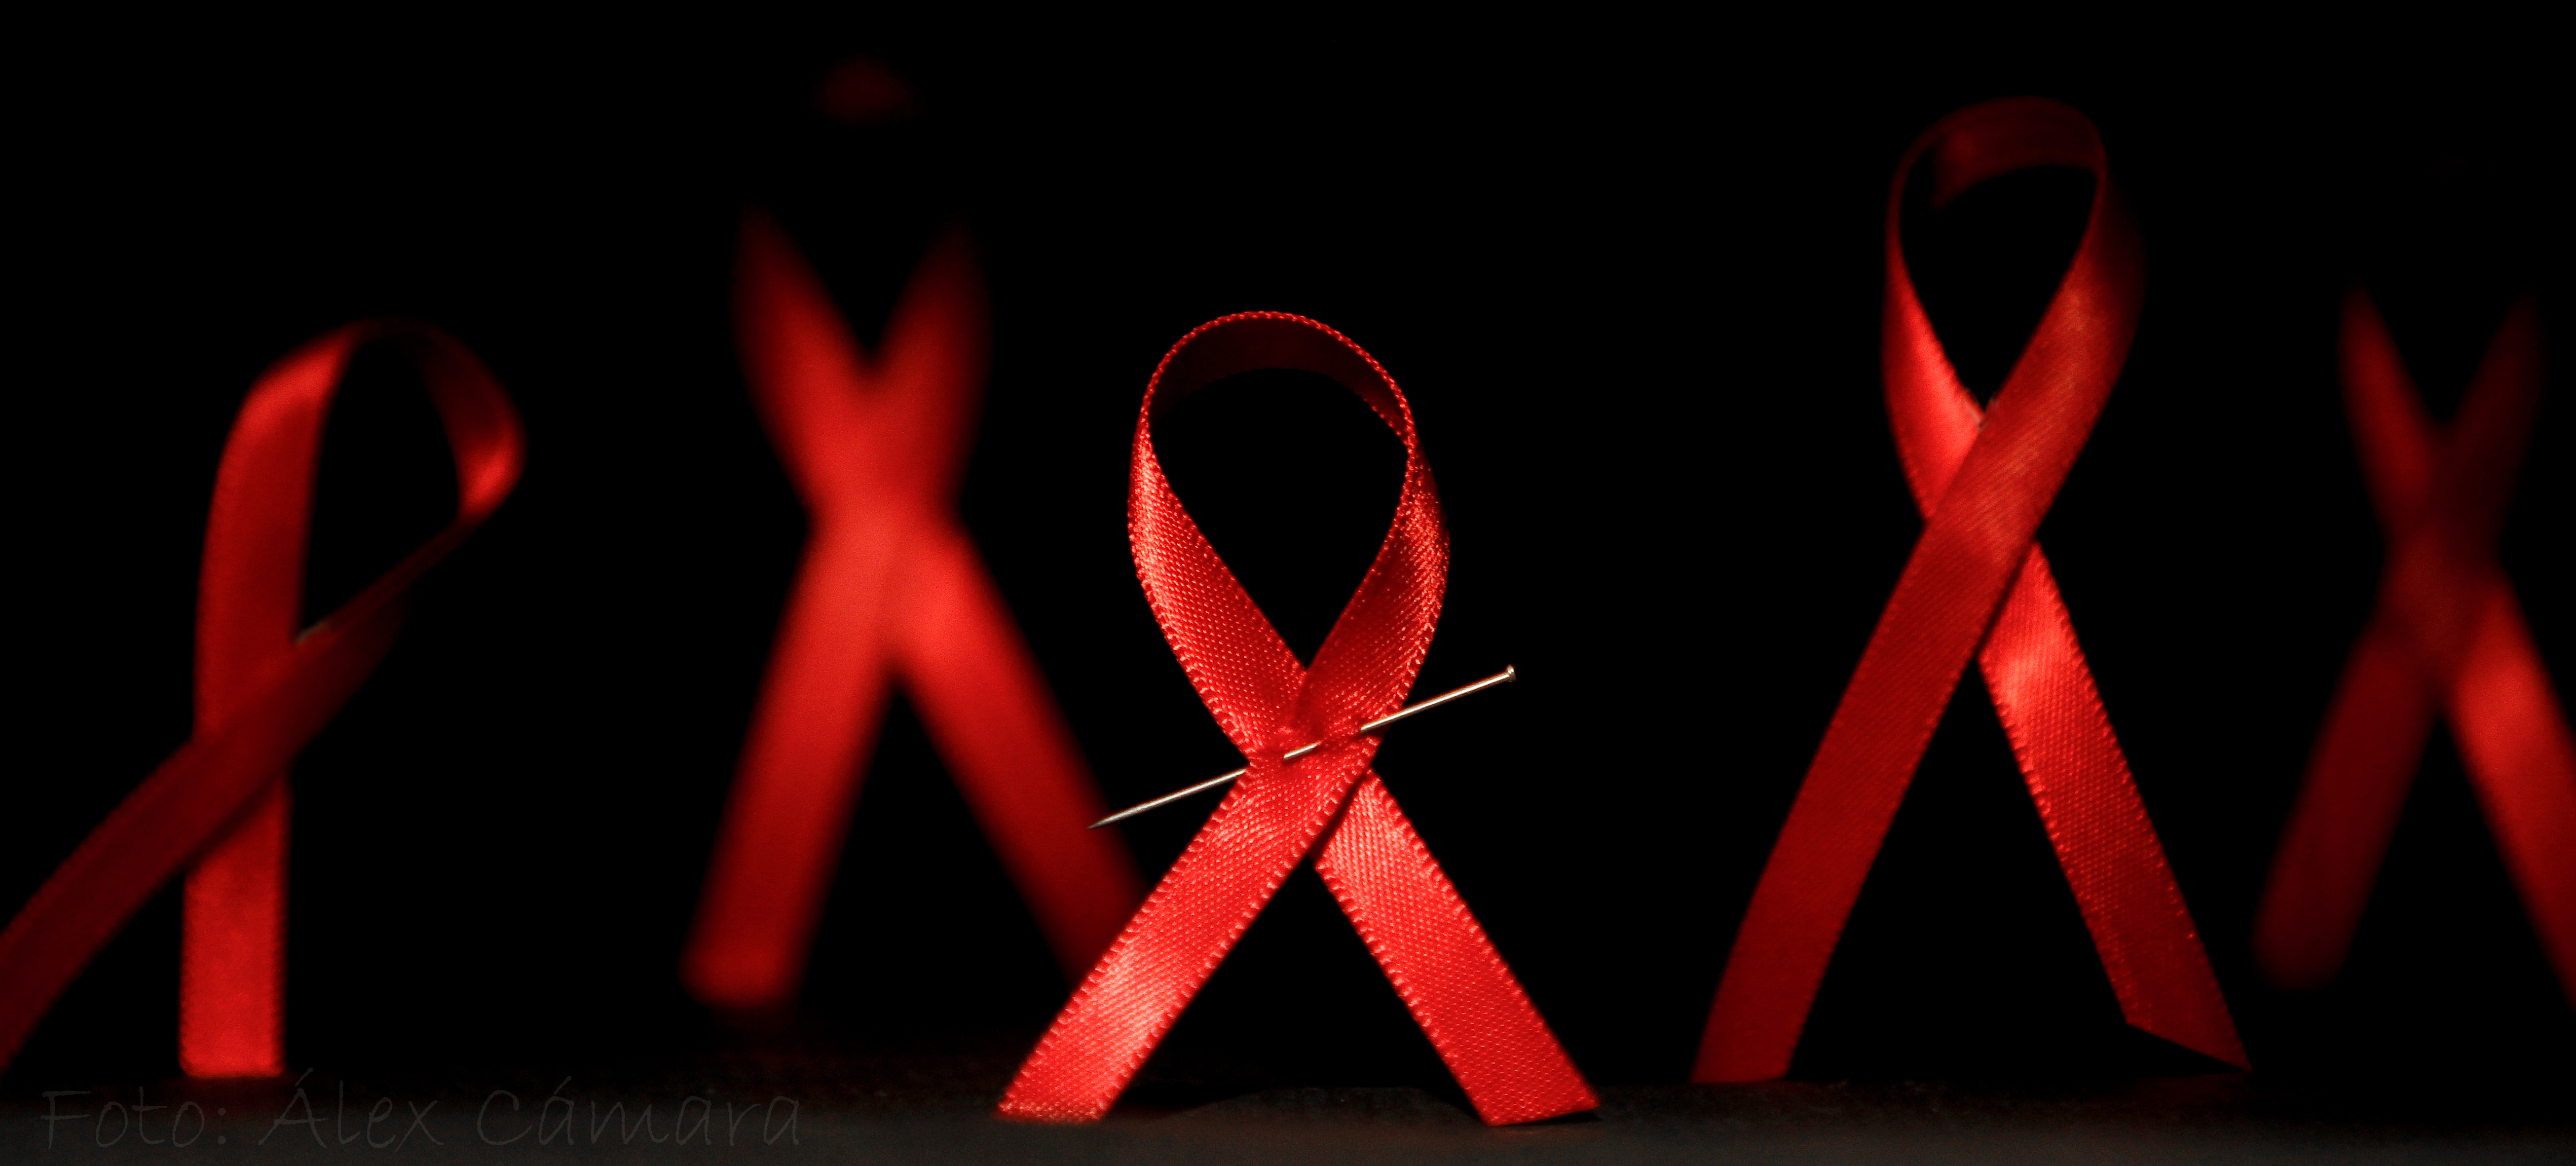 Спид похожие. ВИЧ СПИД. Красная ленточка на черном фоне. СПИД картинки. ВИЧ на черном фоне.